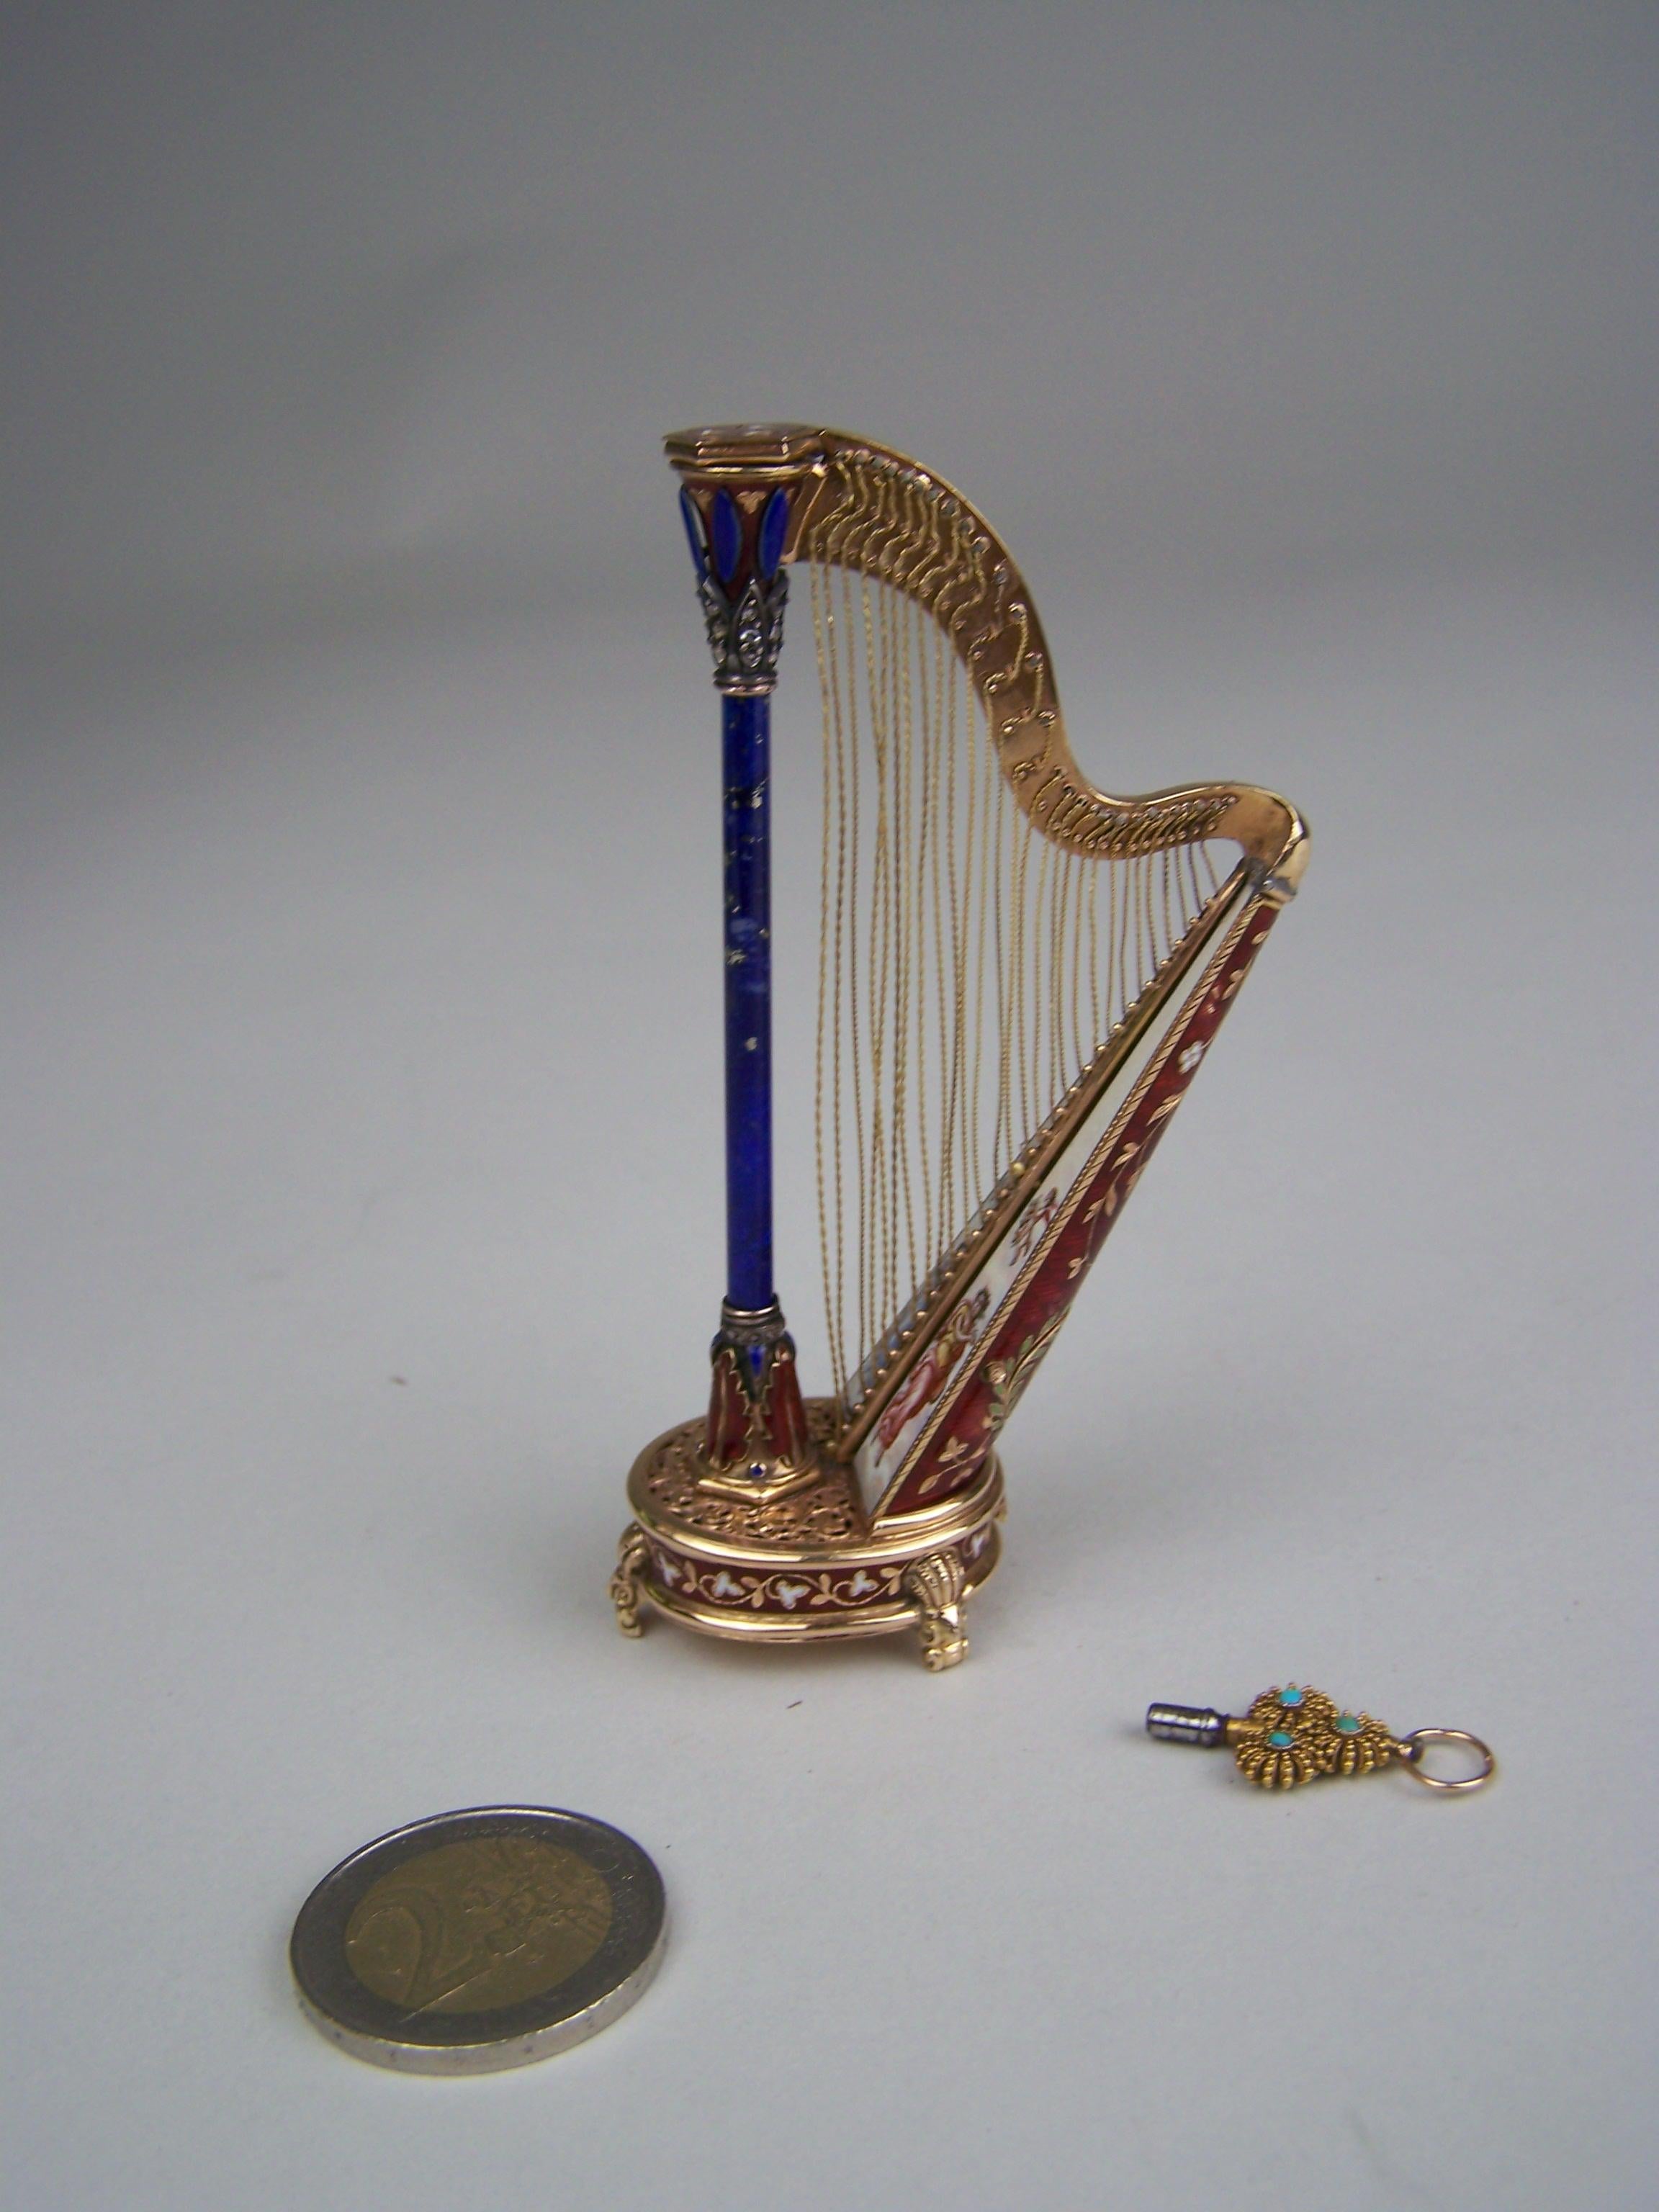 Sehr seltene goldene (14K) musikalische Harfe mit Barilette Bewegung auf den Boden.
Fall von Köchert AE

Mechanismus auf 3 goldenen Füßen und mit roter transludenter Emaille an der Seite. Champleve mit weißen Blättern. Die Oberseite der Spieluhr ist